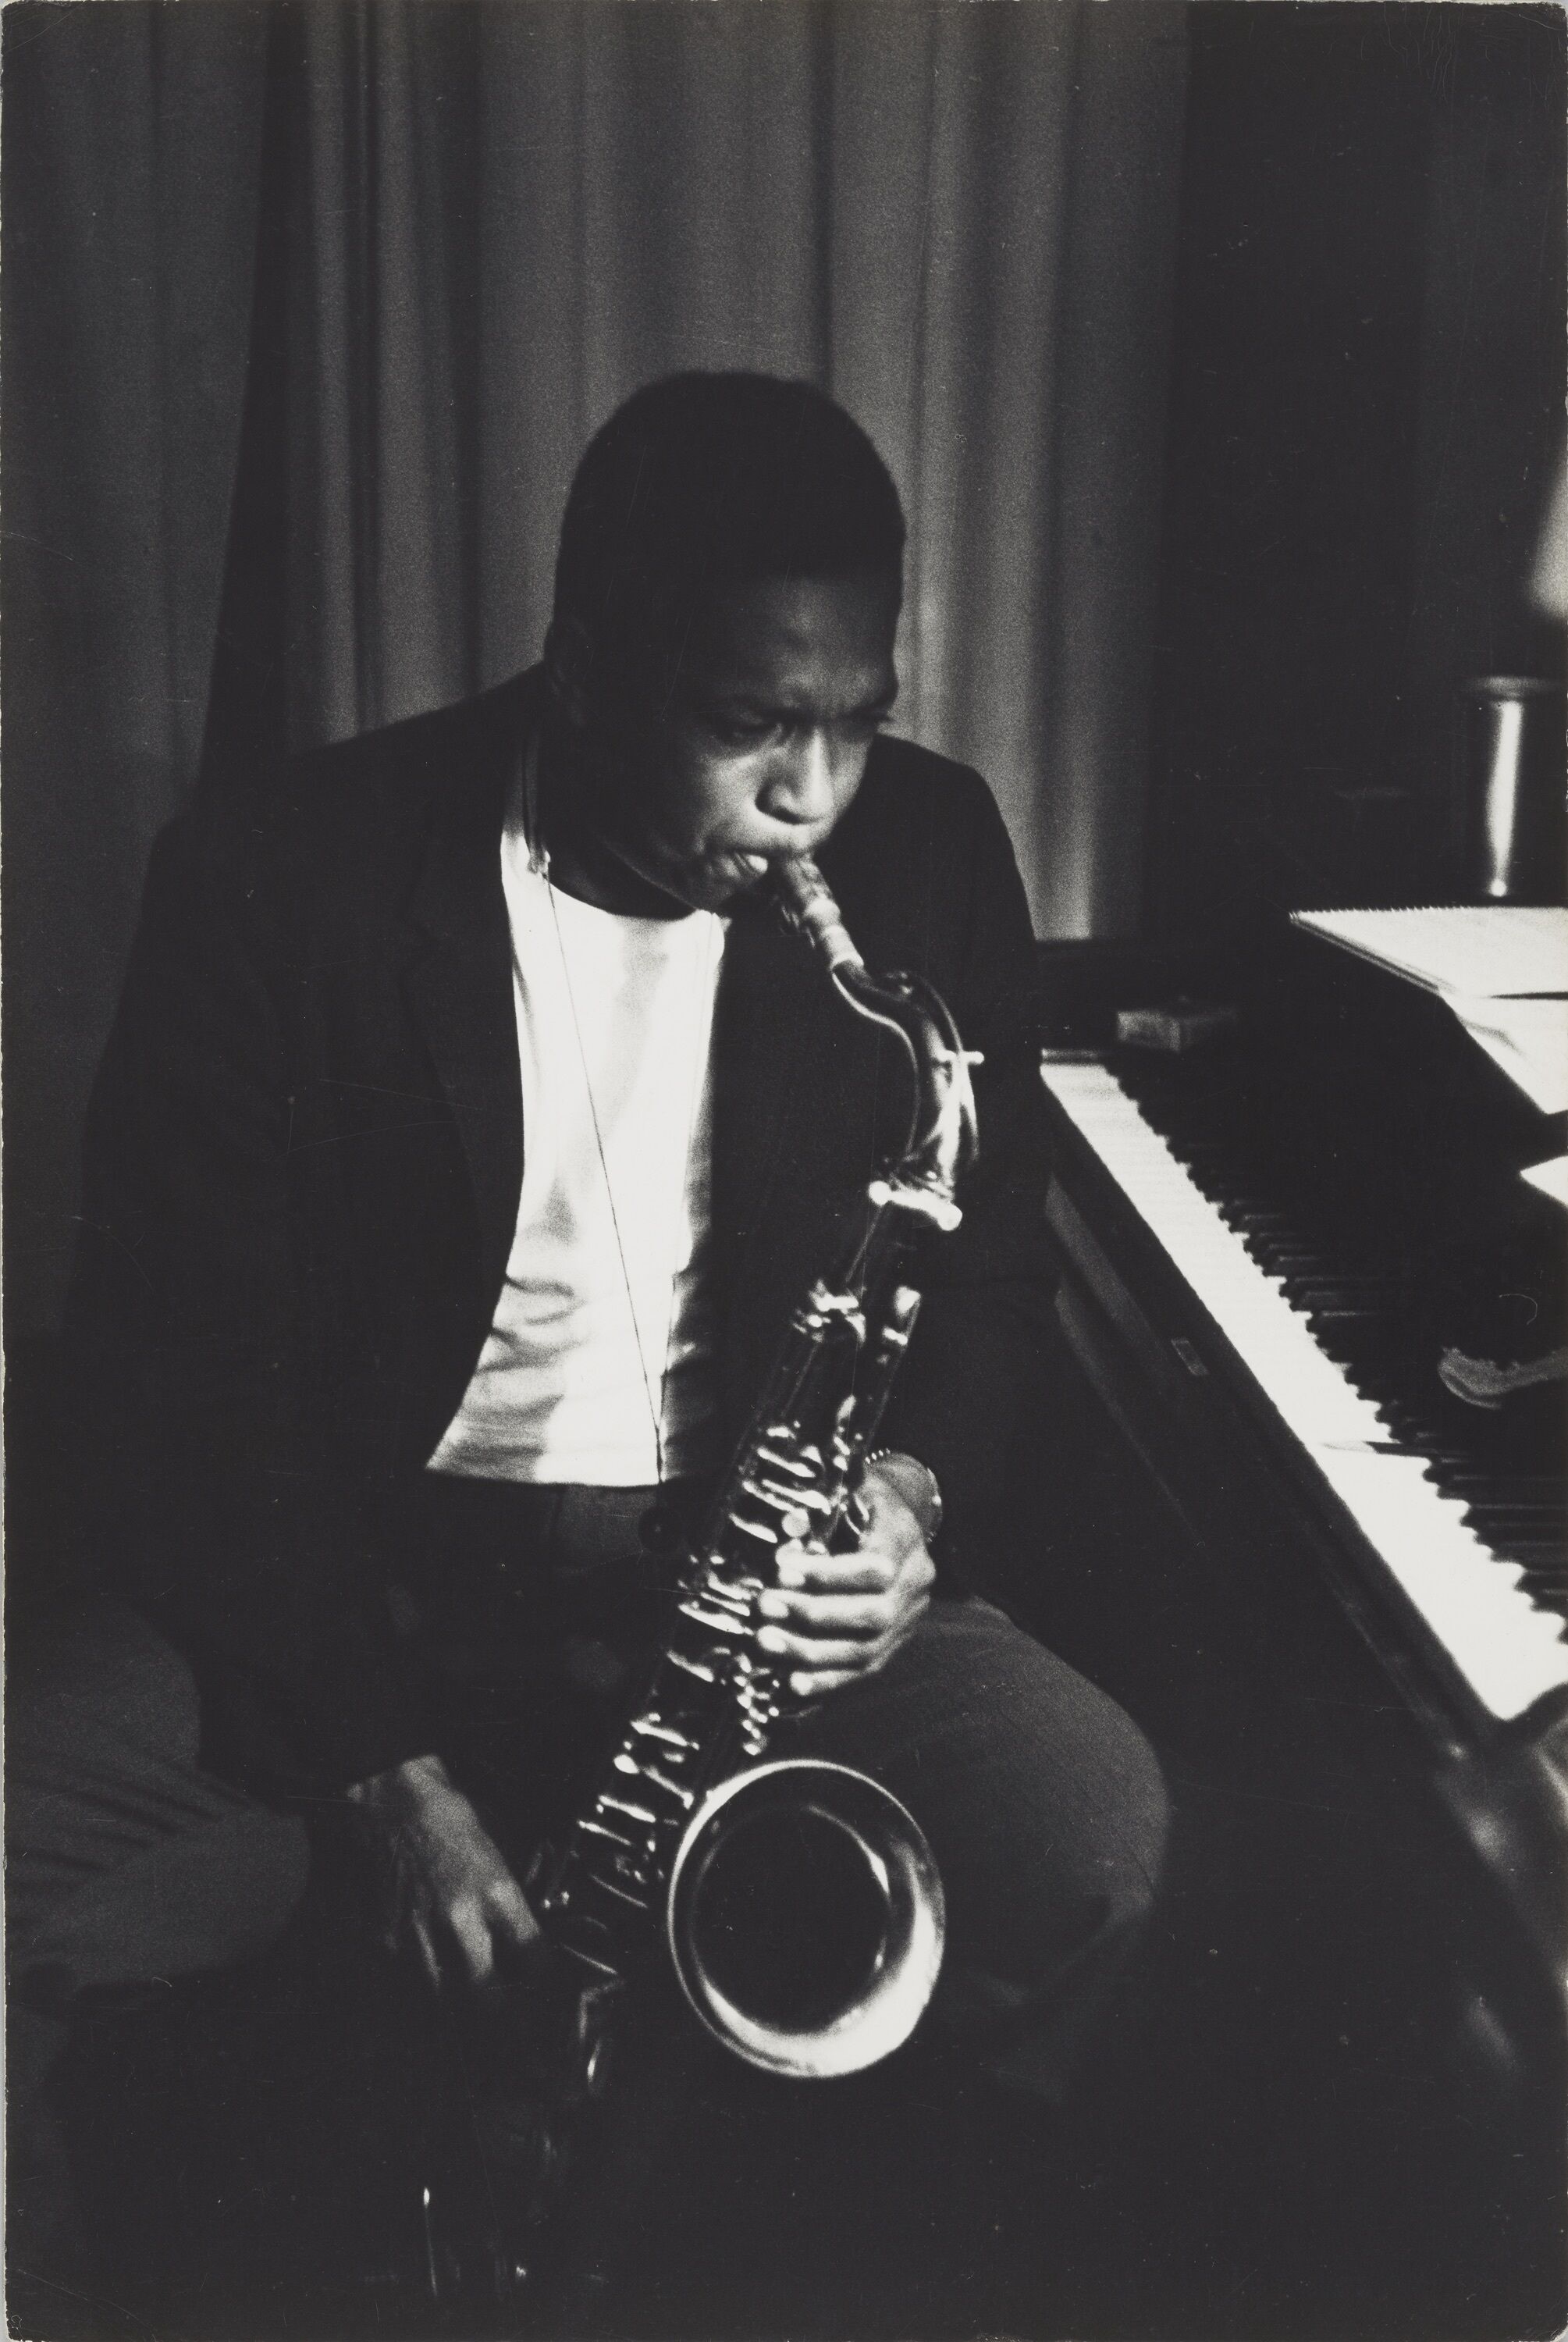 John Coltrane playing a saxophone.